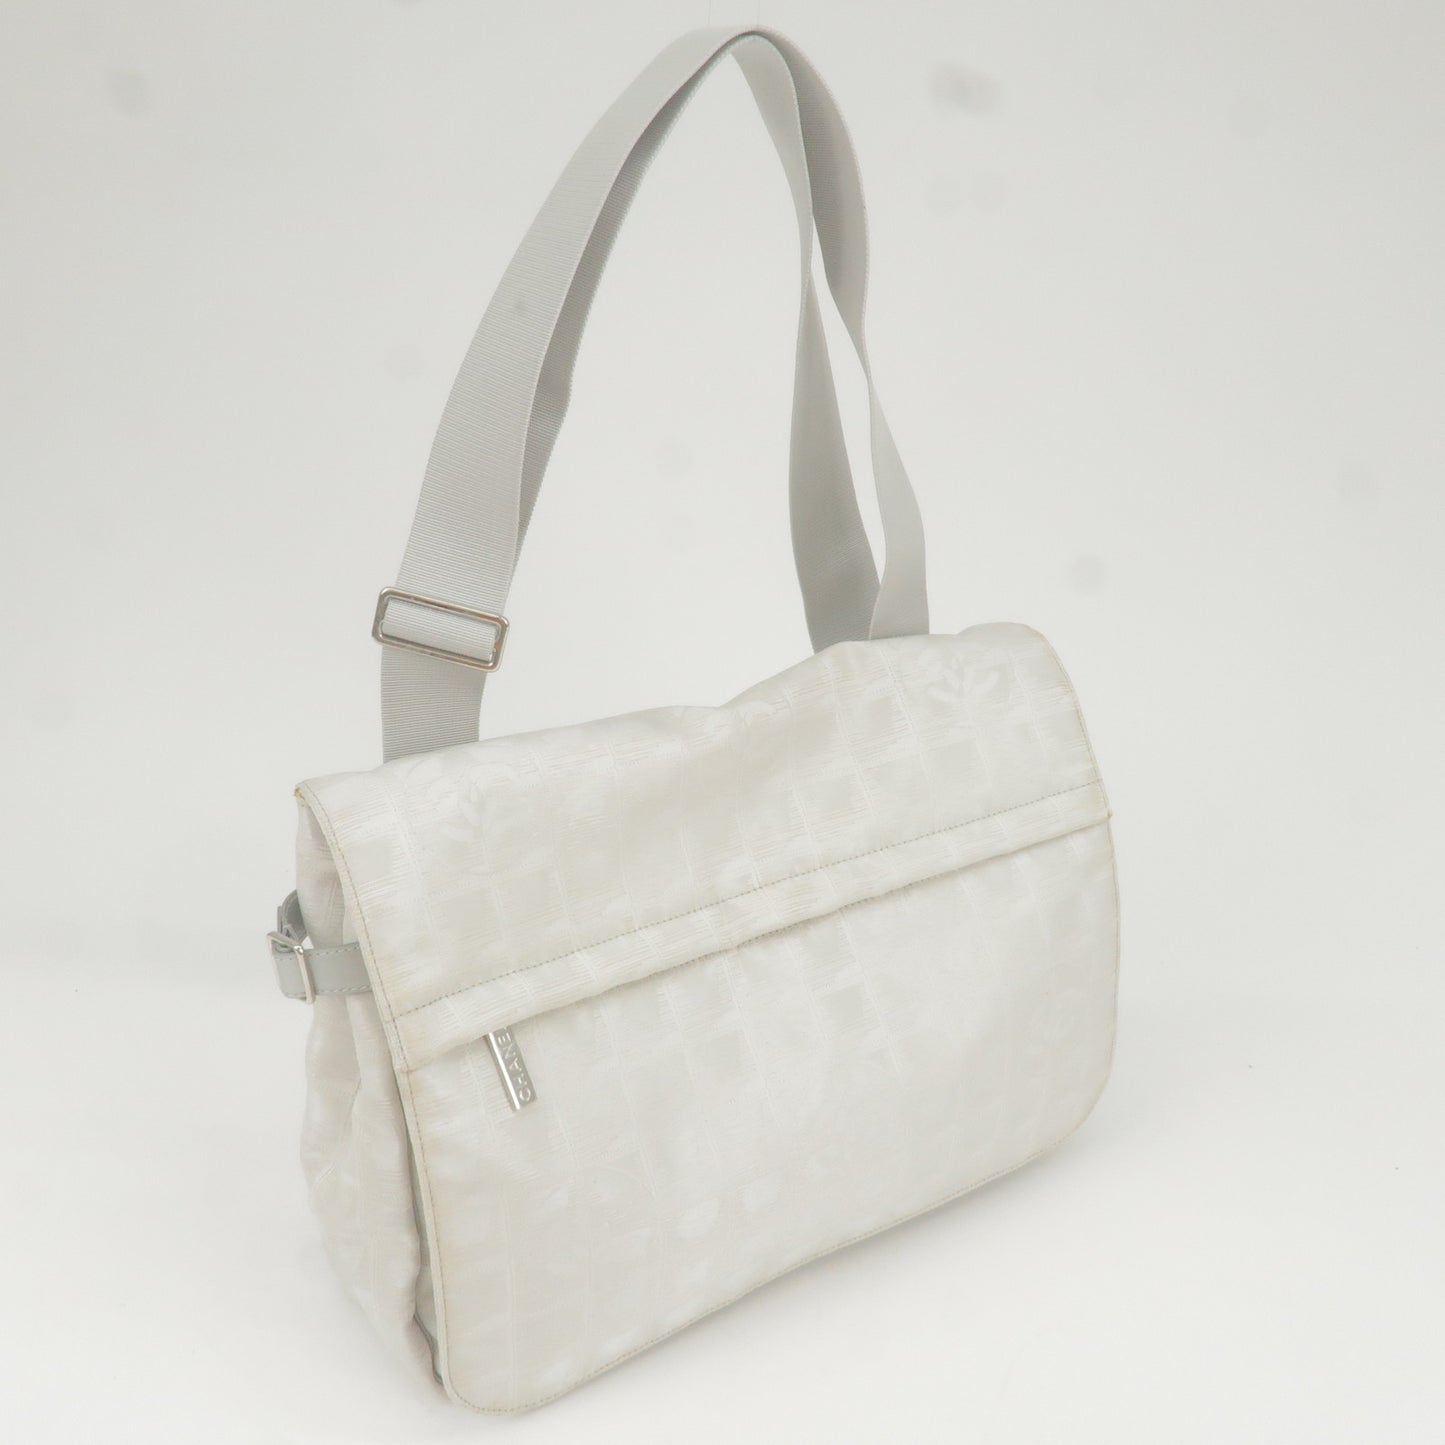 CHANEL Travel Line Nylon Jacquard Leather Shoulder Bag A29348